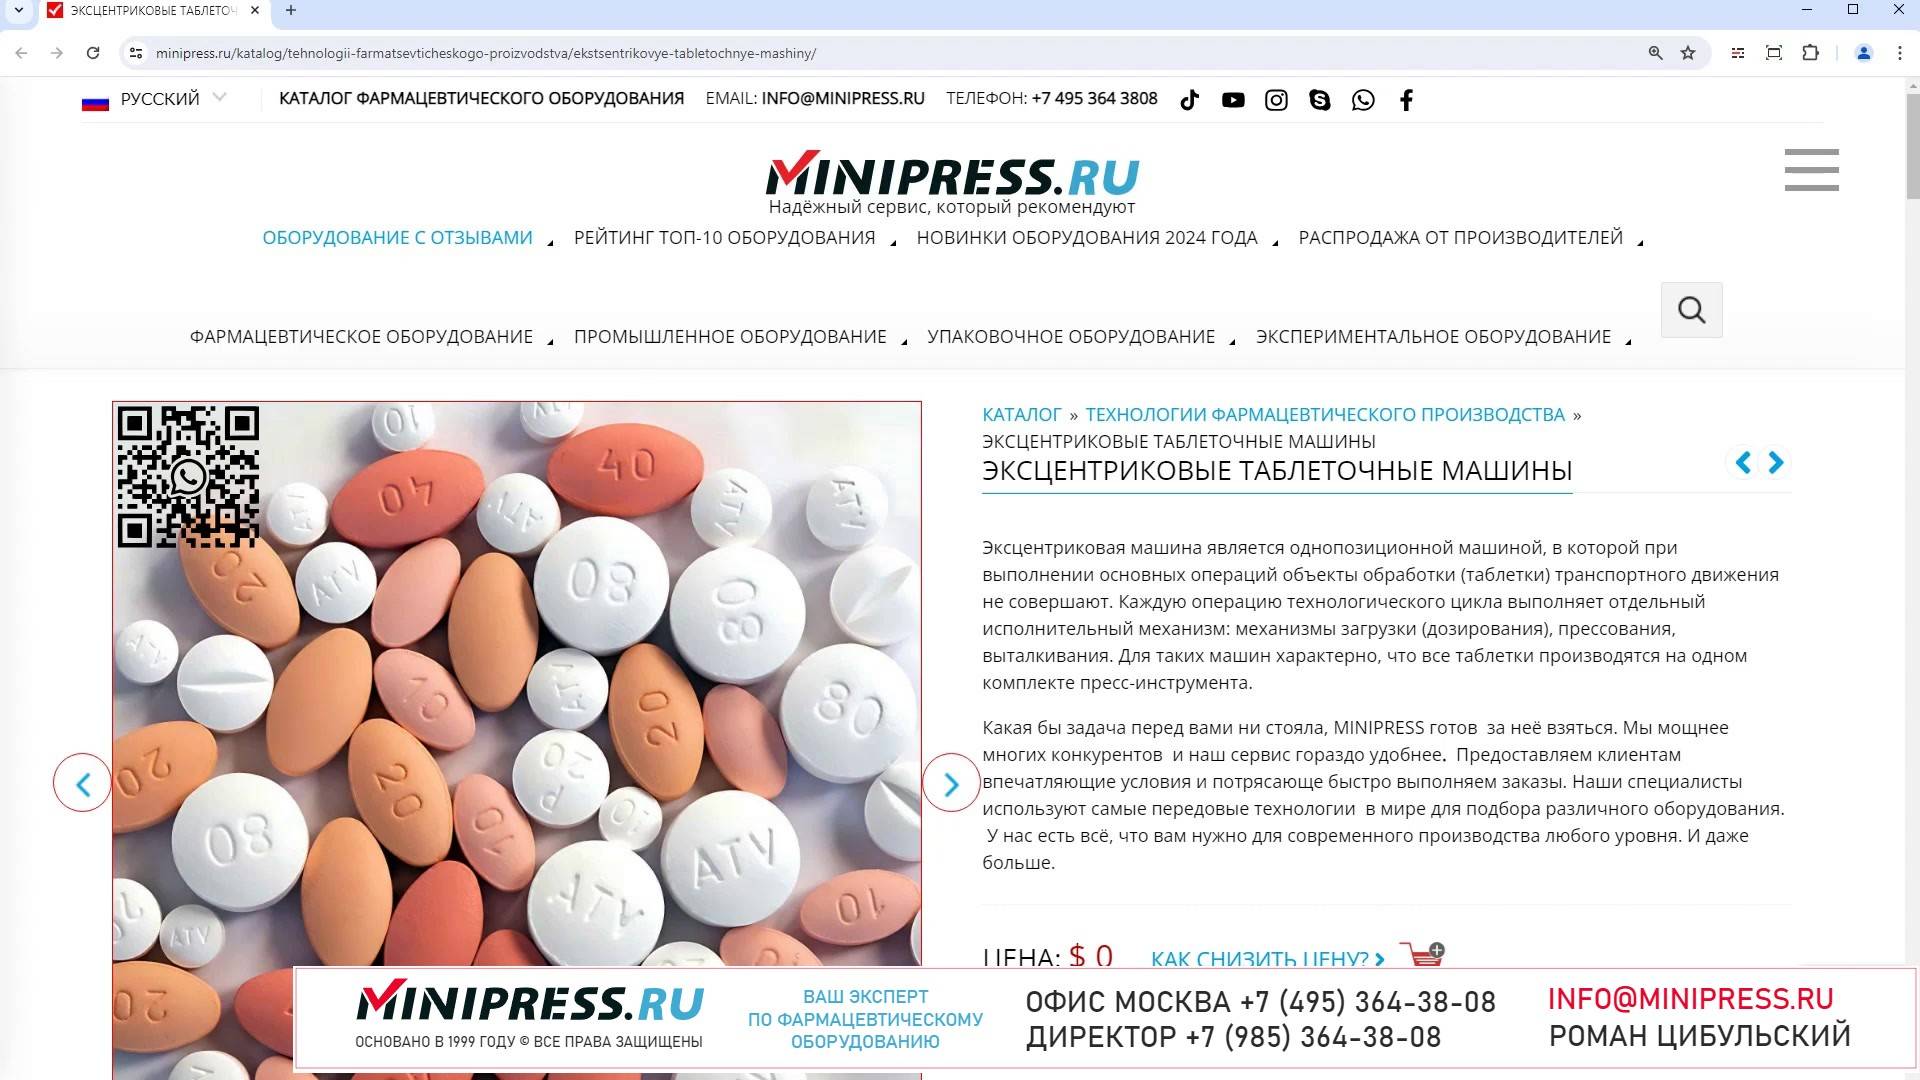 Minipress.ru Эксцентриковые таблеточные машины